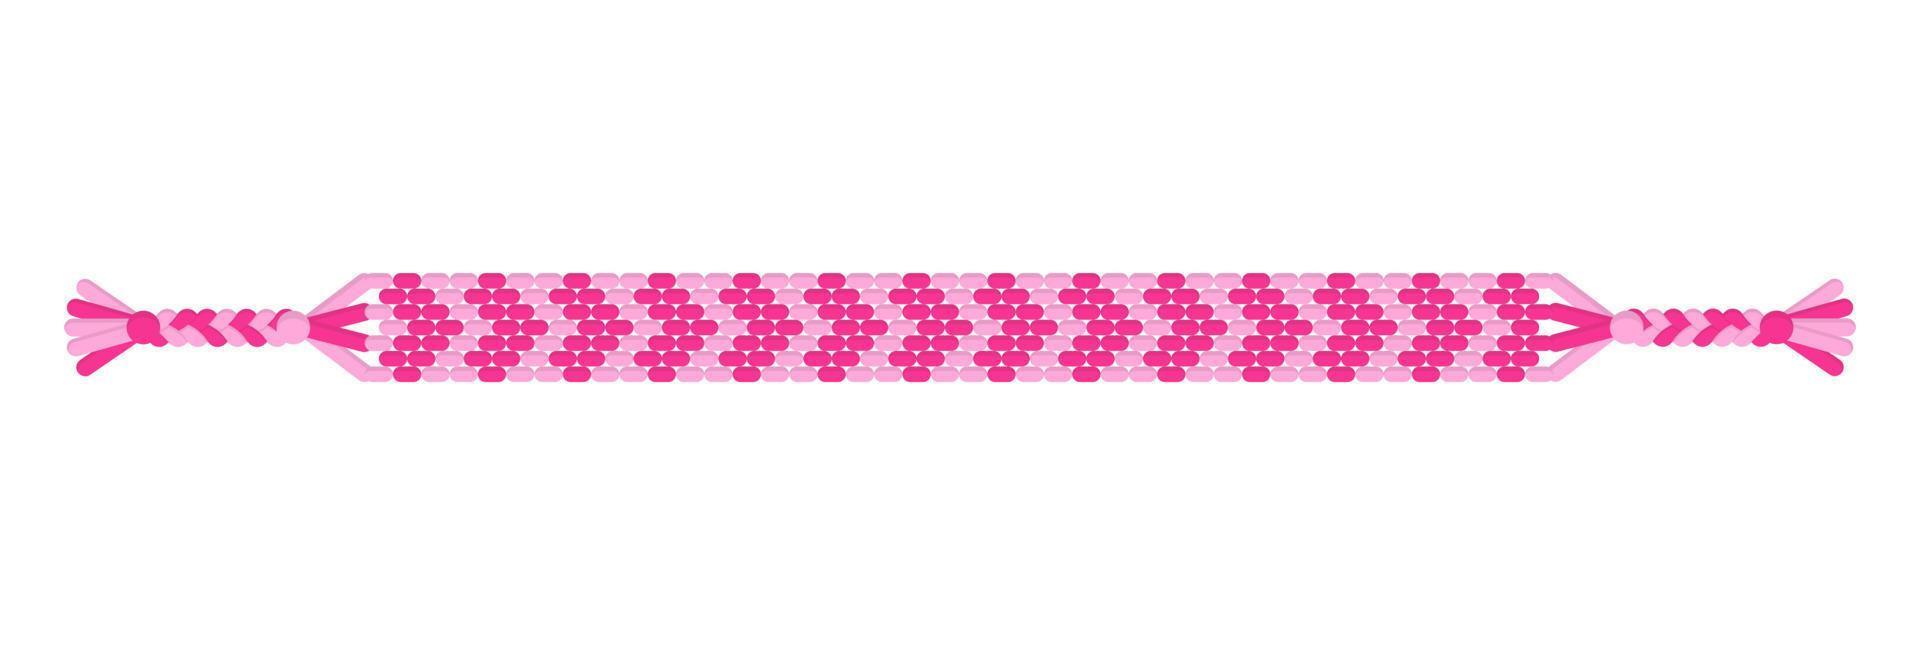 Vector love handmade hippie friendship bracelet of pink threads.